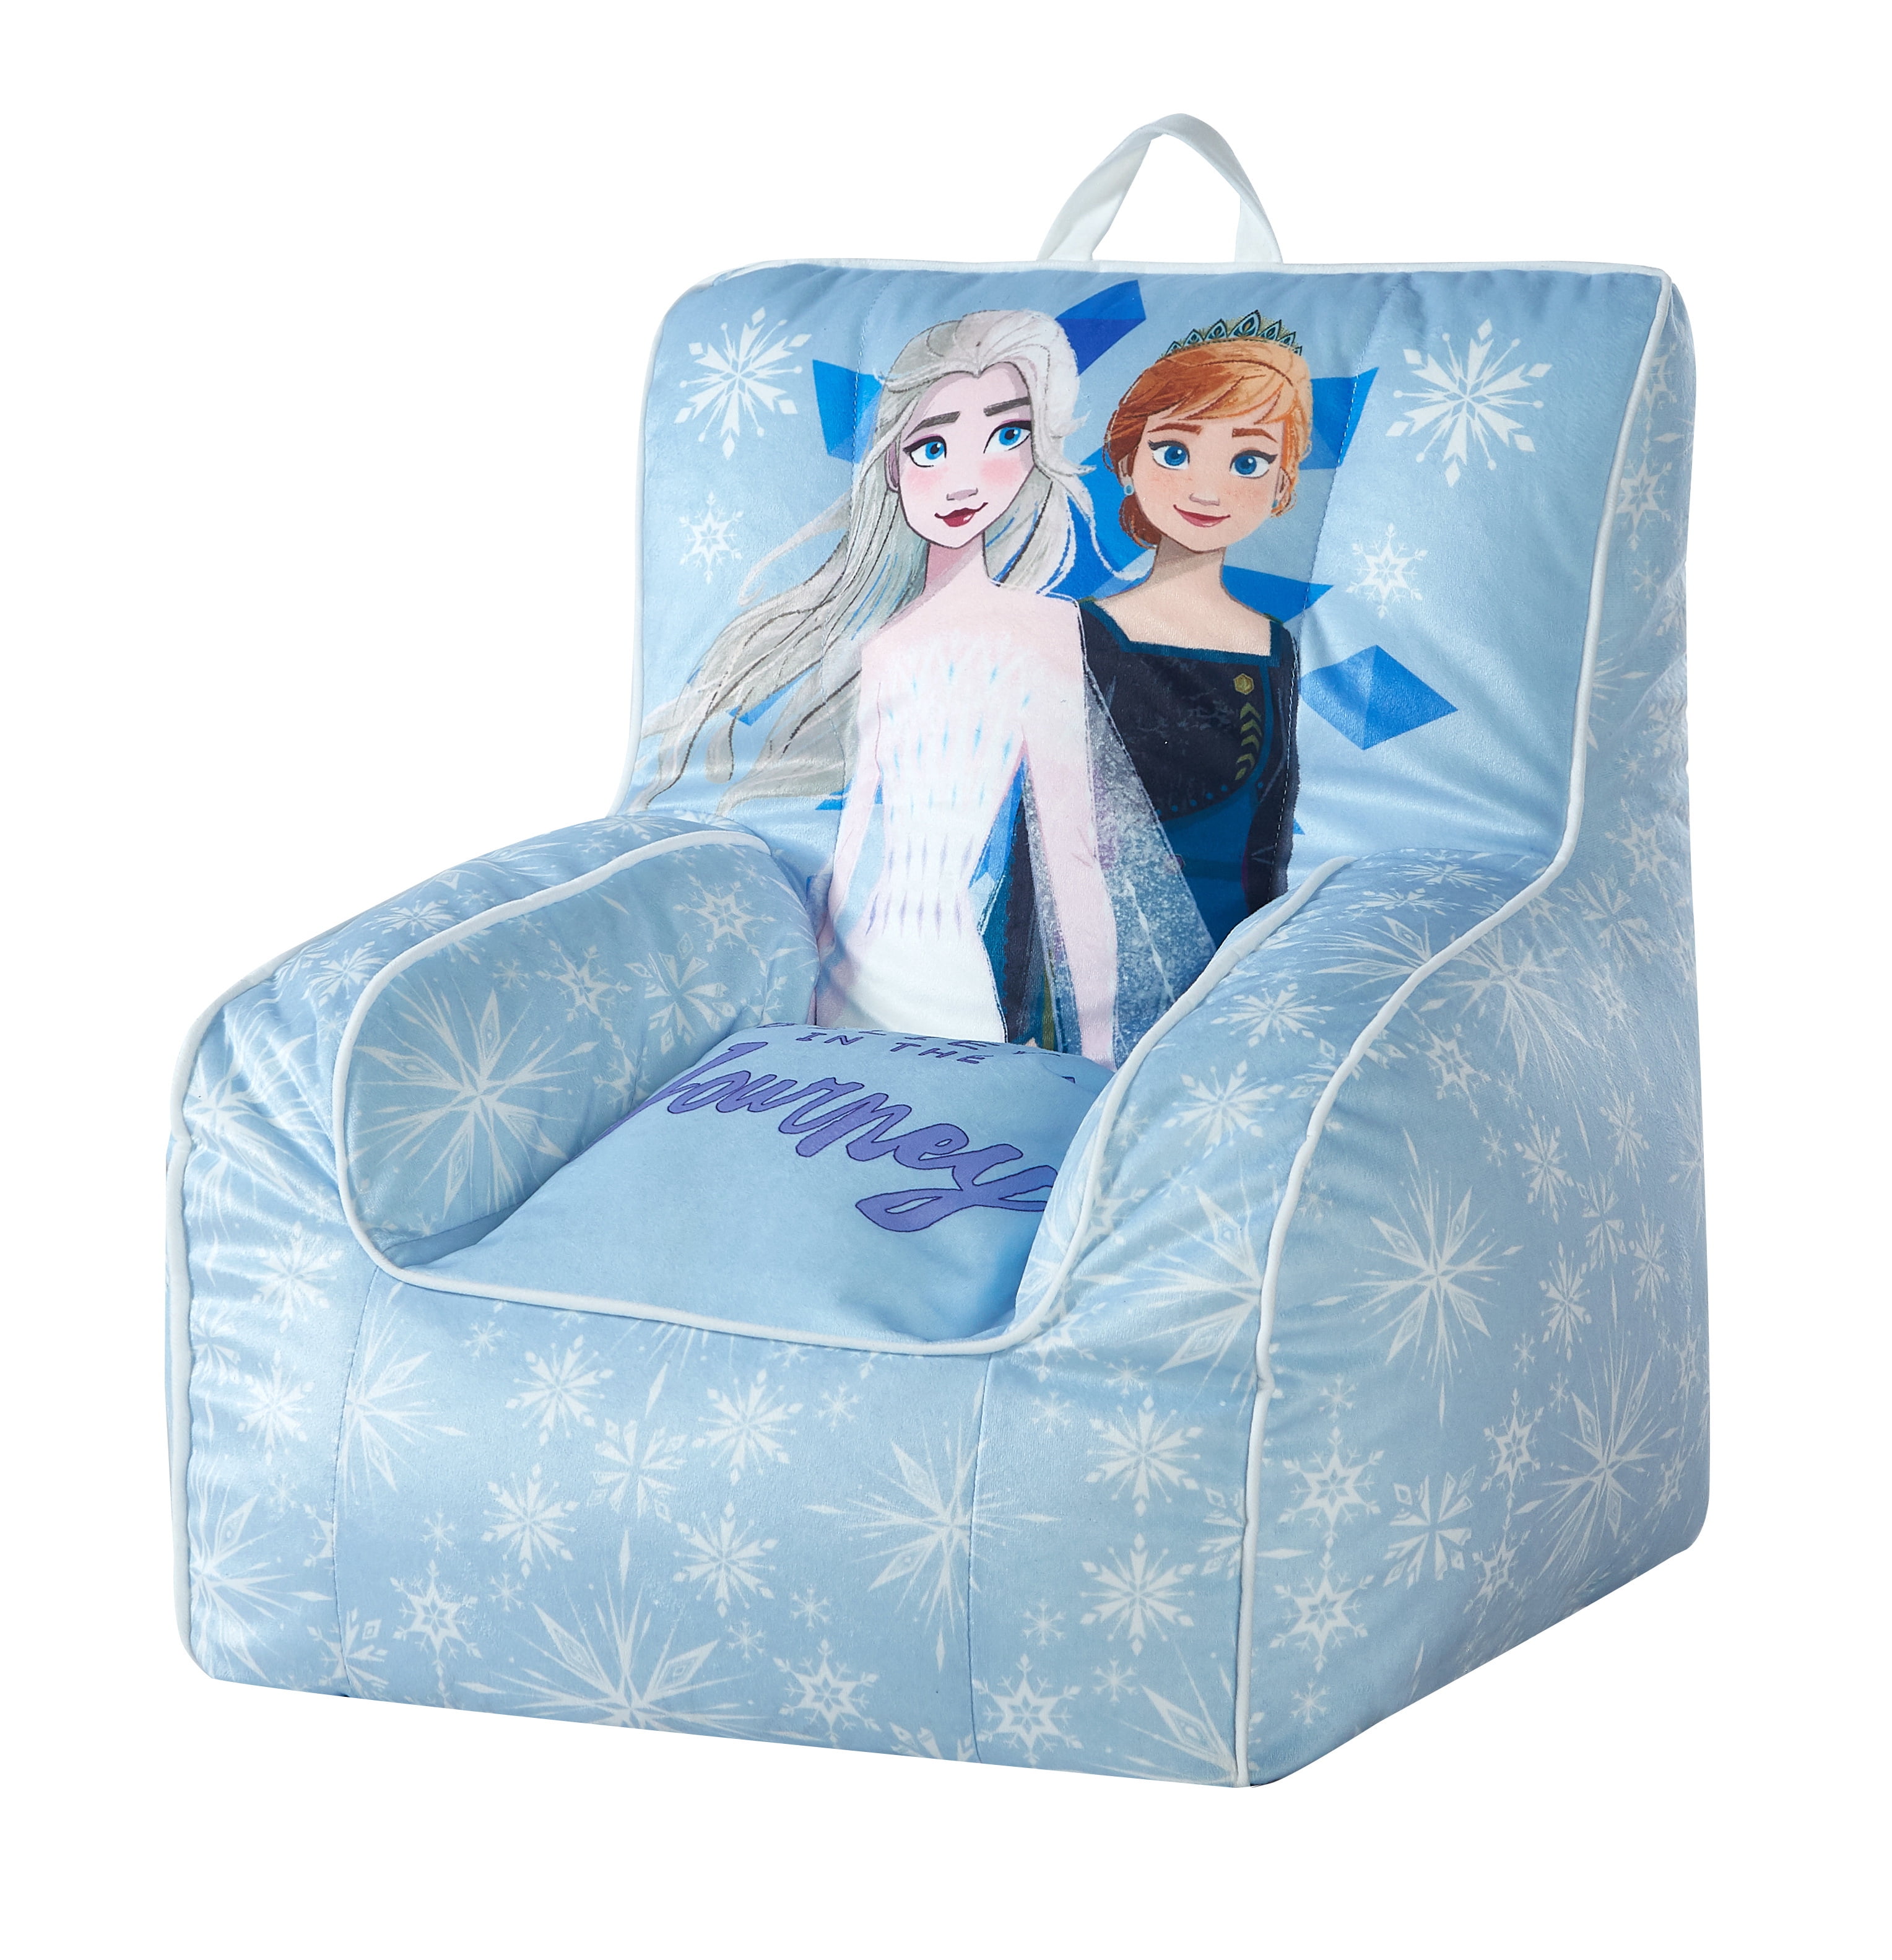 Frozen Toddler Bean Bag Chair, Sky Blue - Walmart.com - Walmart.com